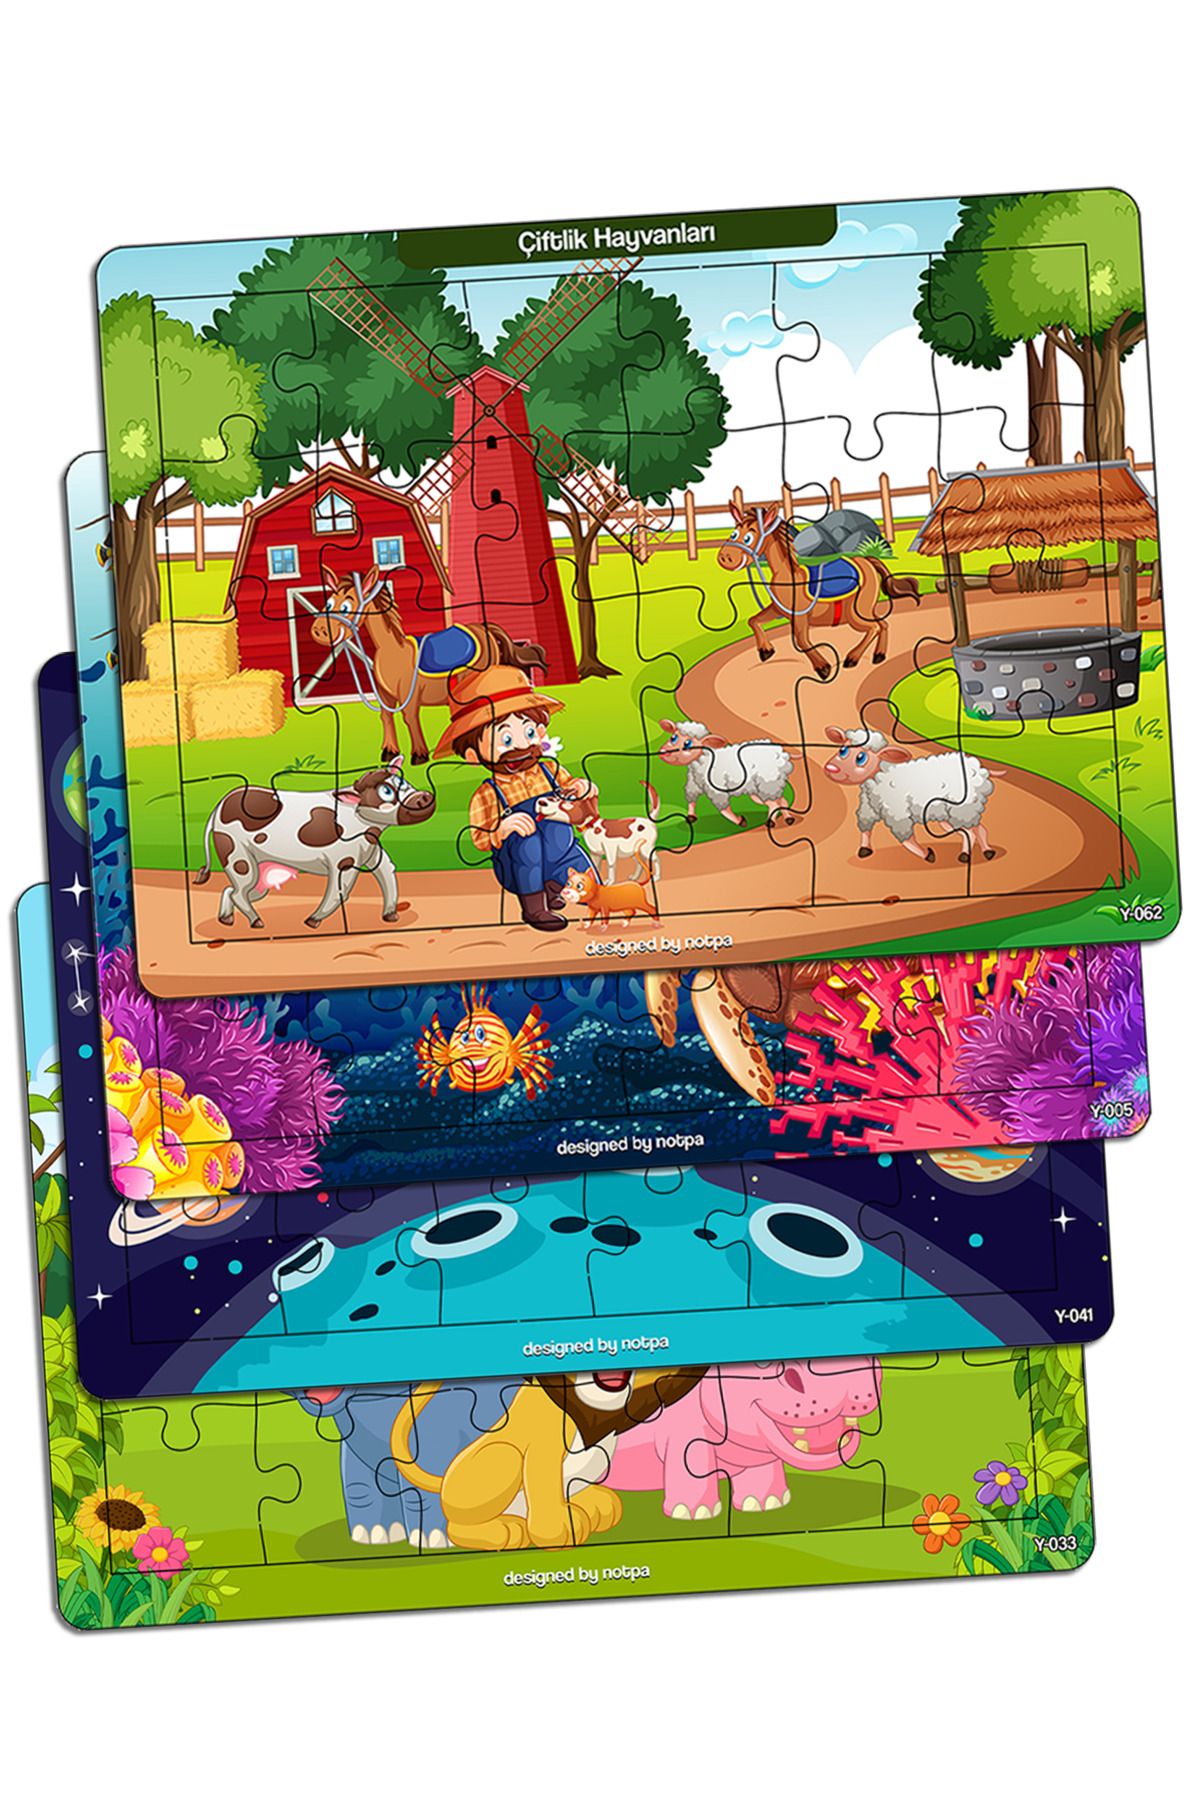 kutuTR Notpa Çocuklar Için Eğitici Ve Öğretici Ahşap 24 Parça Renkli Puzzle 4lü Set 11